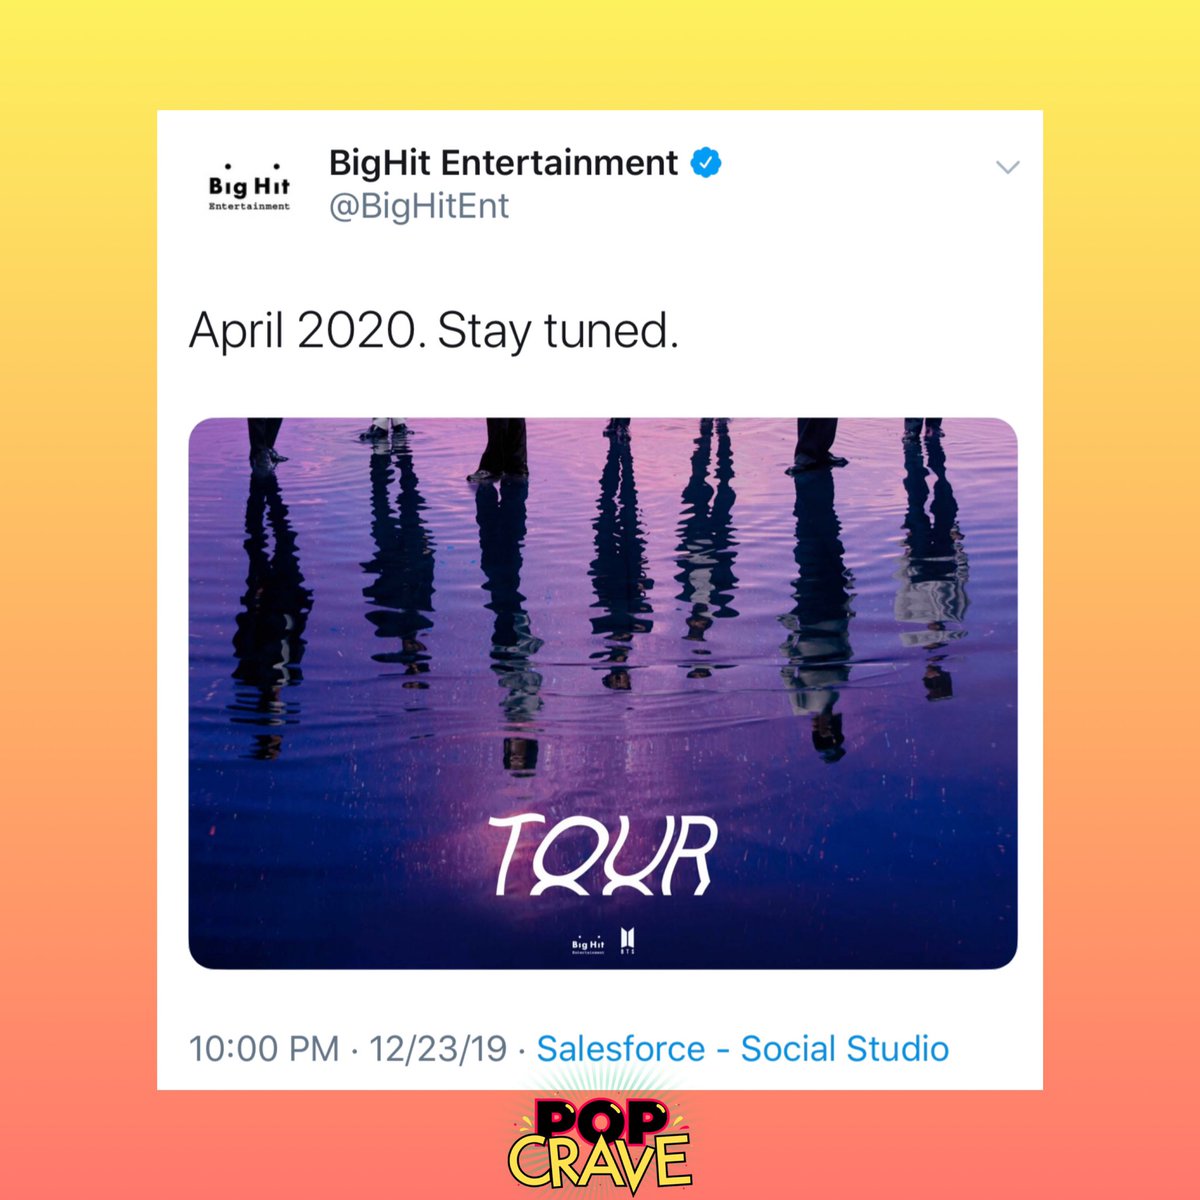 Pop Crave Bighit Entertainment Appears To Tease New Bts Tour For April